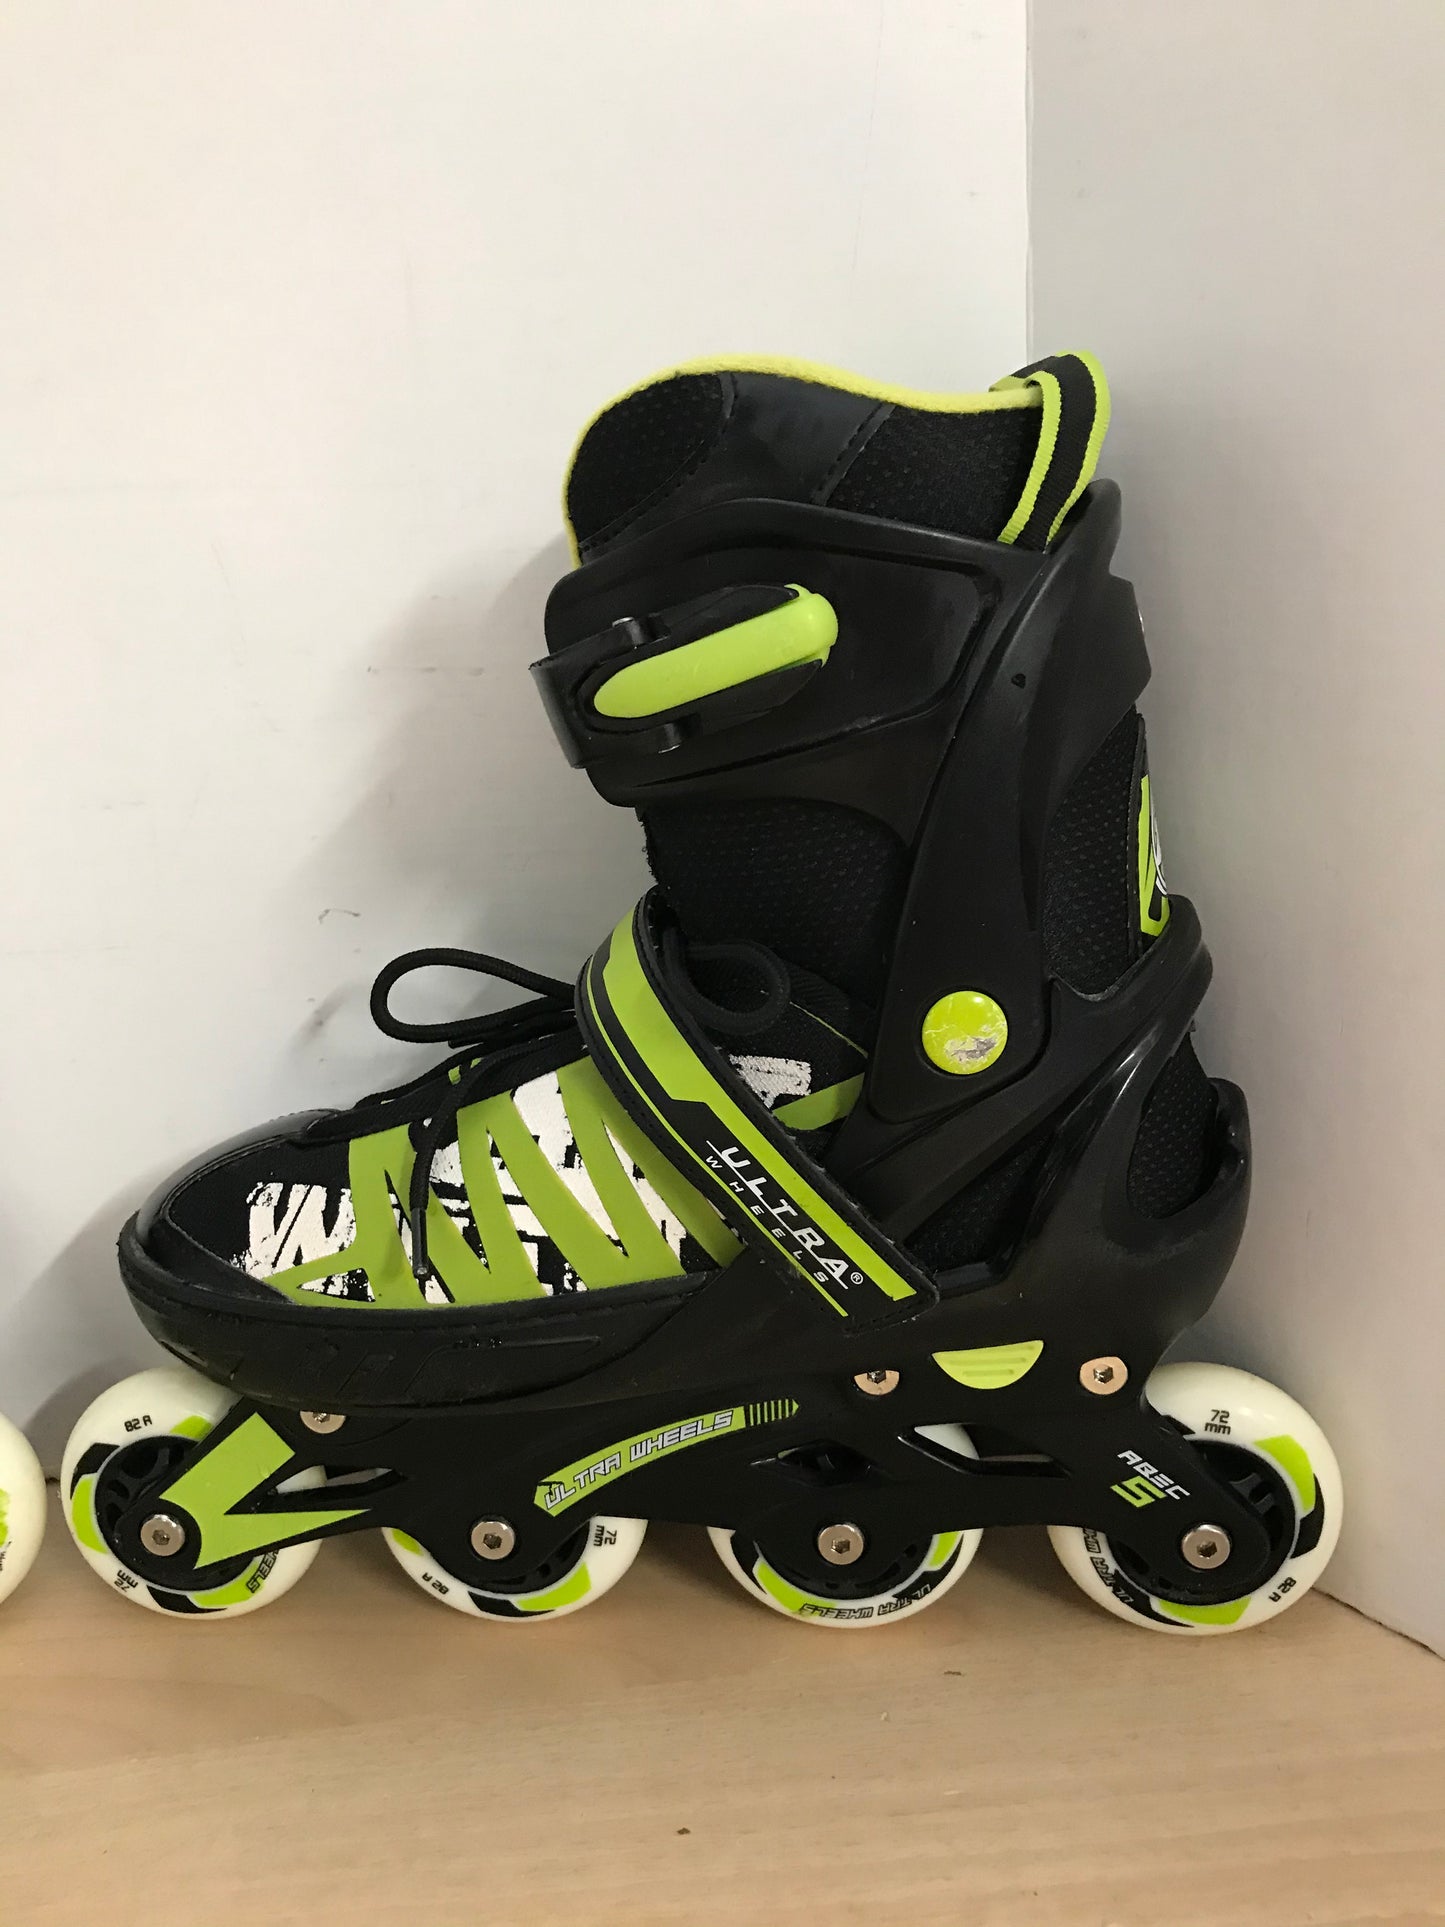 Inline Roller Skates Men's Size 9-11 Ultra Wheels Adjustable Rubber Wheels Black Lime Excellent